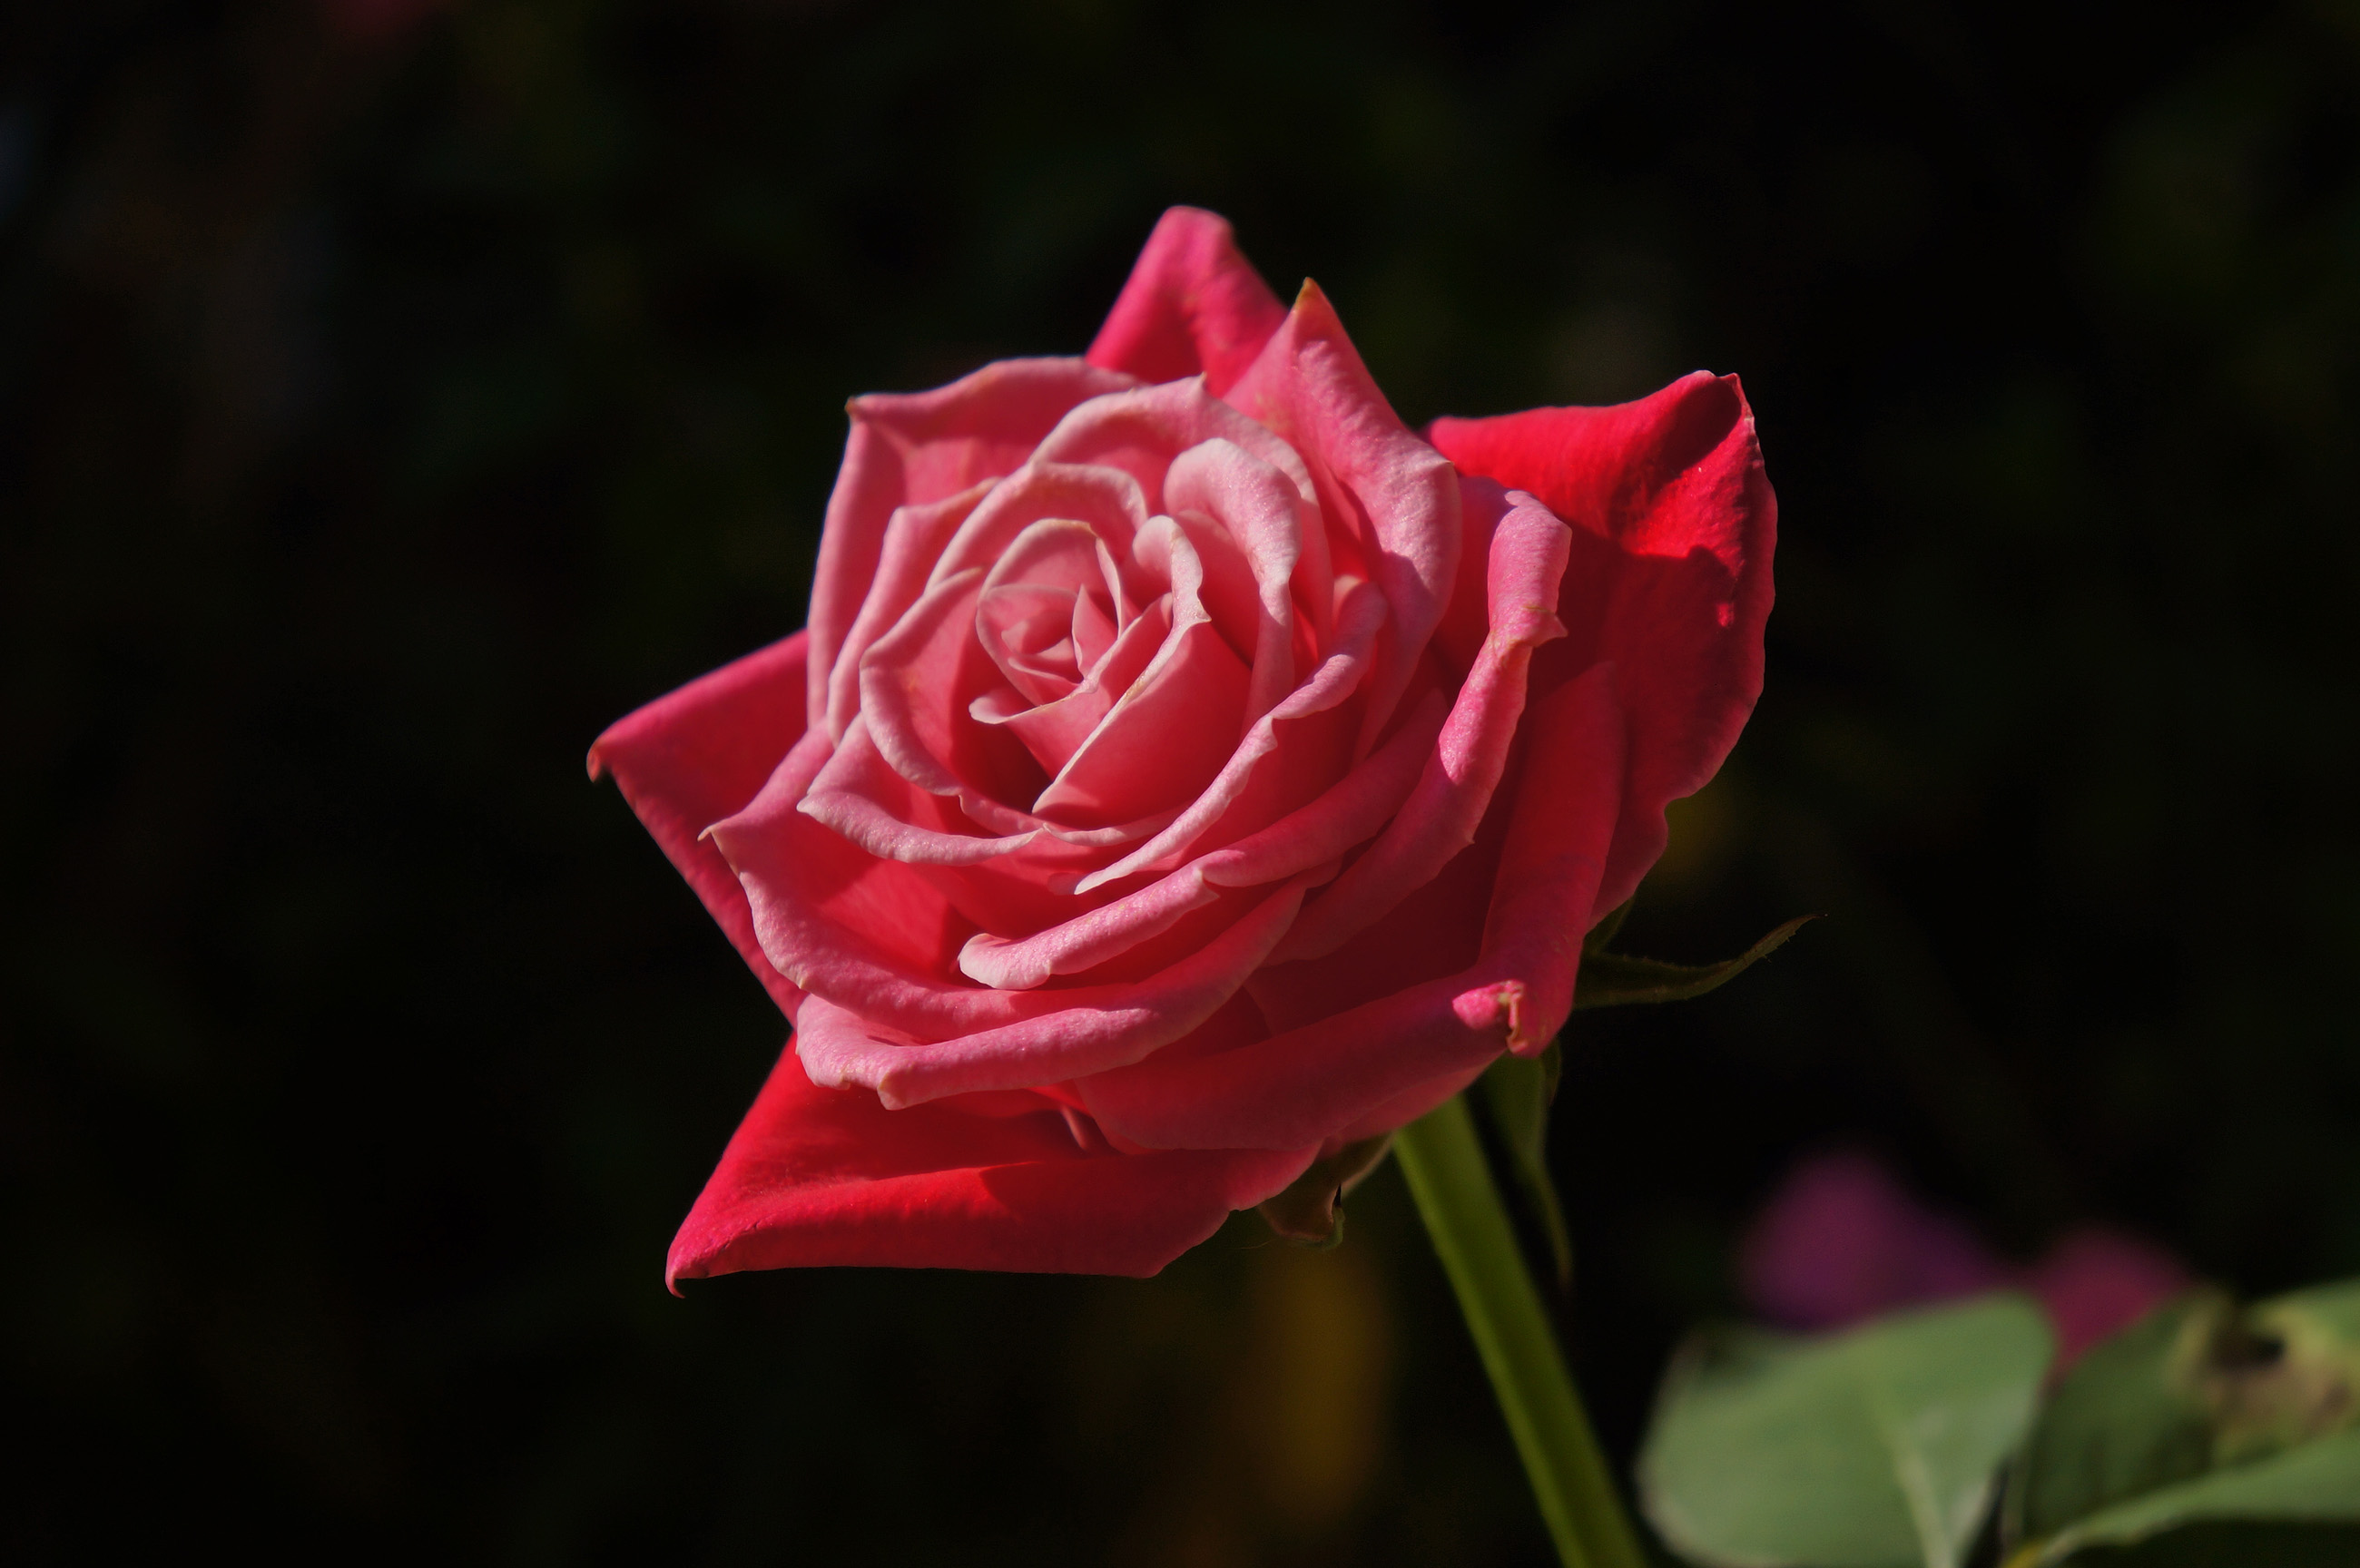 赤いバラ 真紅の薔薇の写真 高解像度画像 デスクトップ壁紙 無料素材 フリー素材 商用利用可能 Hp用素材 ミラーレス Sony Nex 5n 大きな 写真 絵ココロ レビュー 感想 子育て 料理 豆知識 美容 健康 イラスト Cg